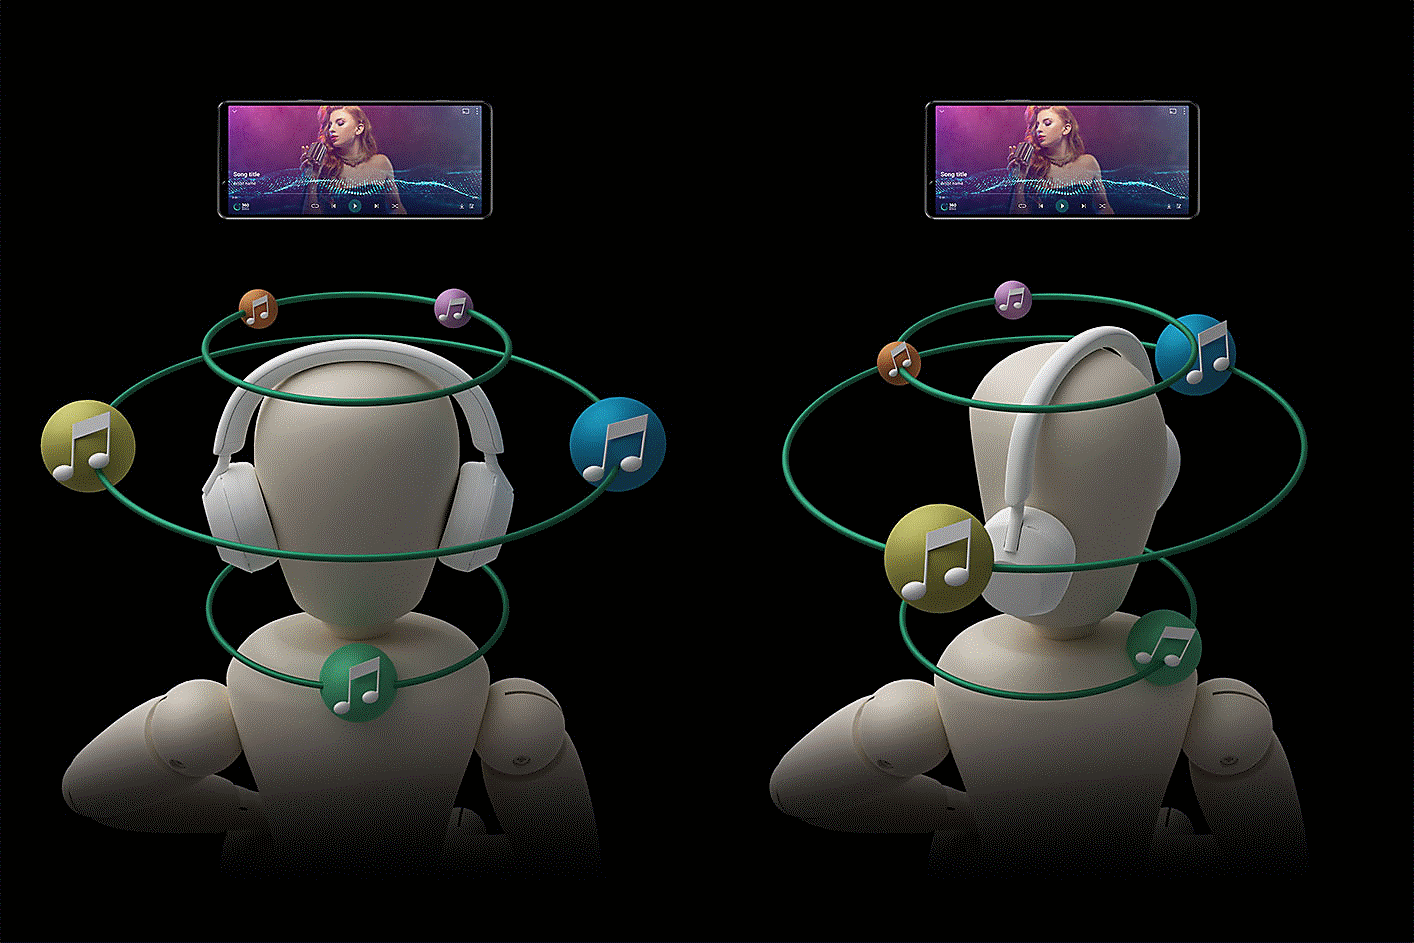 Deux personnes portant des écouteurs entourés de bulles de son. La tête de gauche est bien droite, tandis que celle de droite et ses bulles sont tournées.